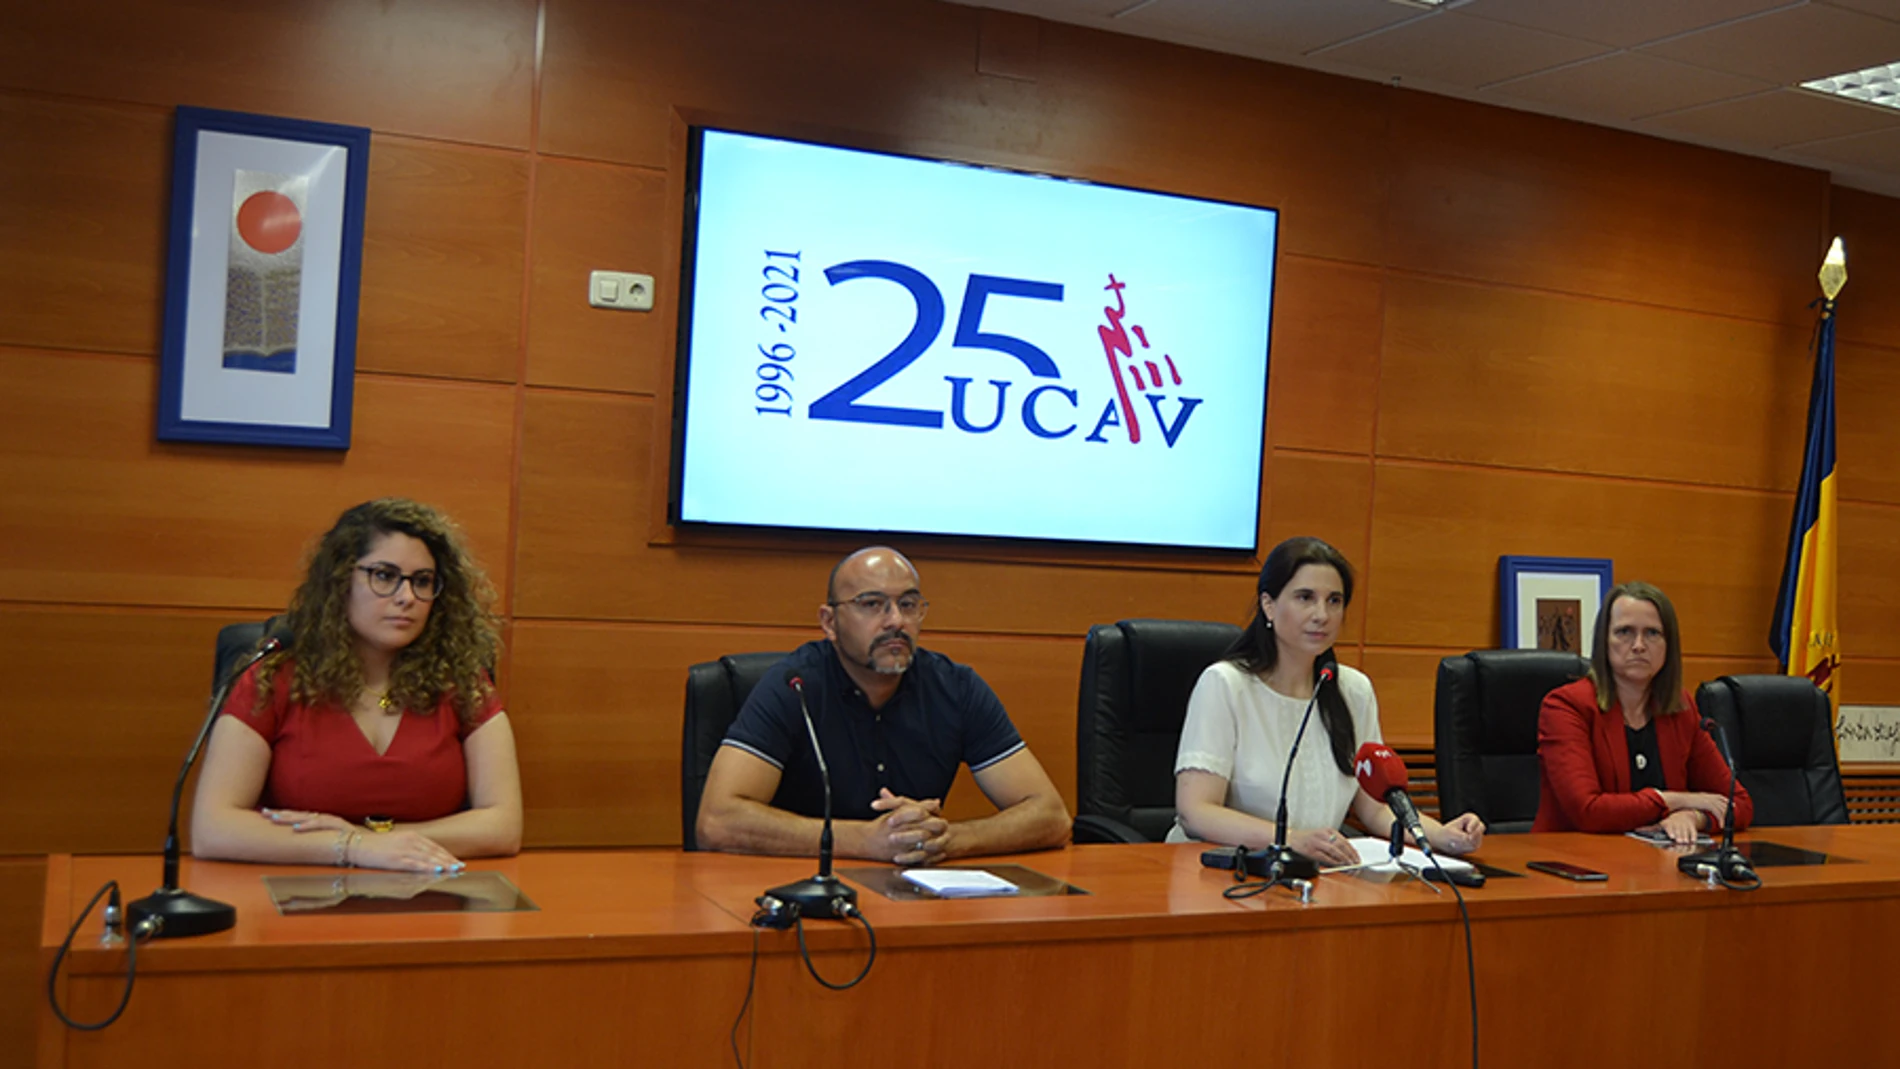 Presentación de las nuevas menciones de la UCAV a cargo de Lourdes Miguel Sáez, Diego Vergara, Gabriela Torregrosa y María Nieto